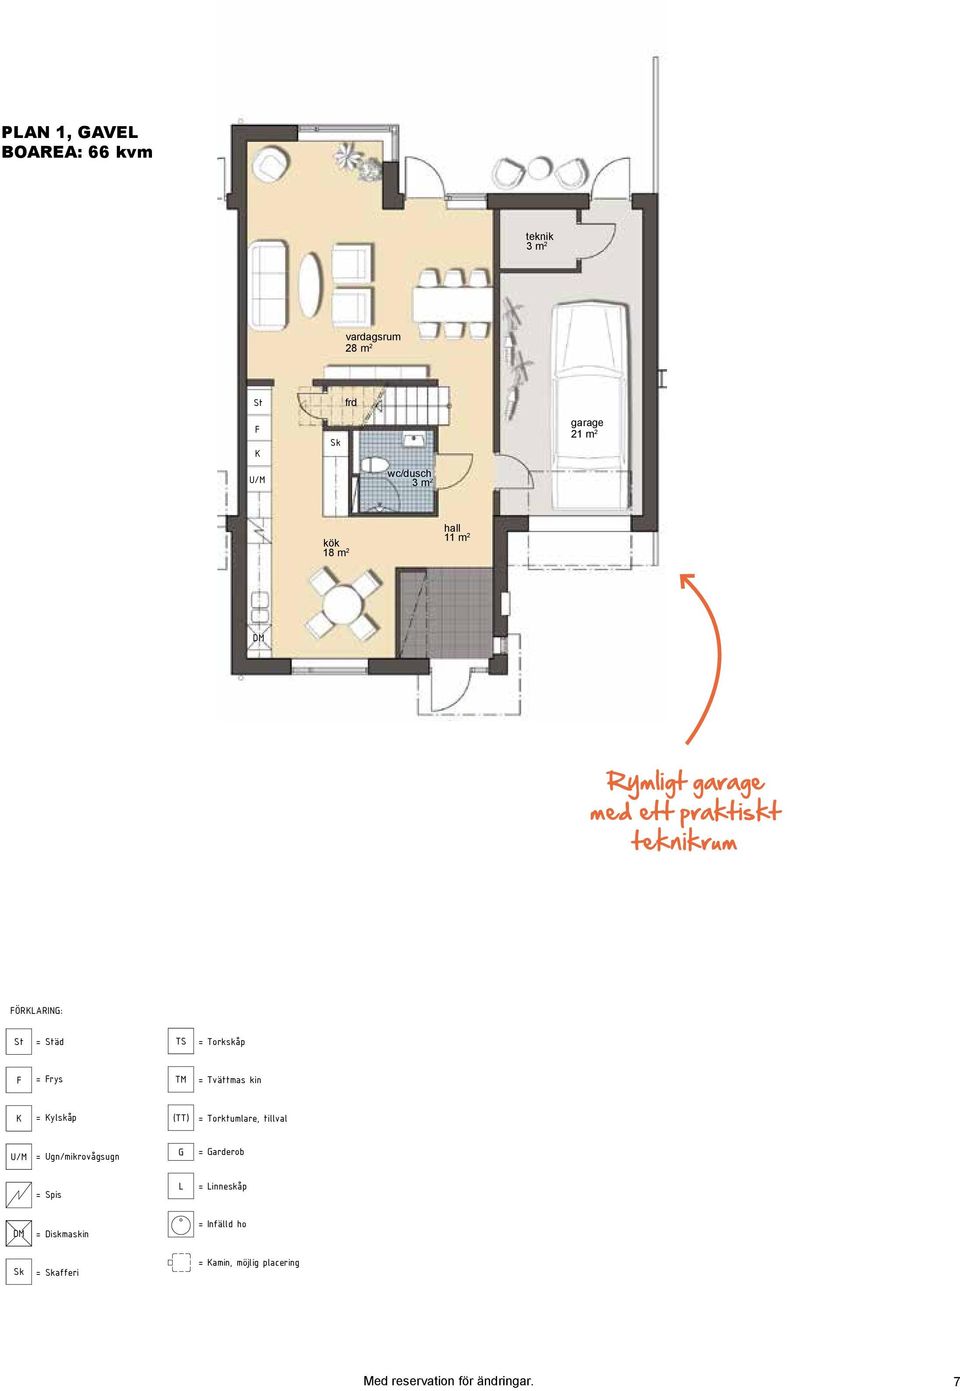 ÖRARIN: plan 1 (gavel) = äd abcd - rättvänt hus = rys = ylskåp Rymligt garage med ett praktiskt teknikrum teknik 3 m 2